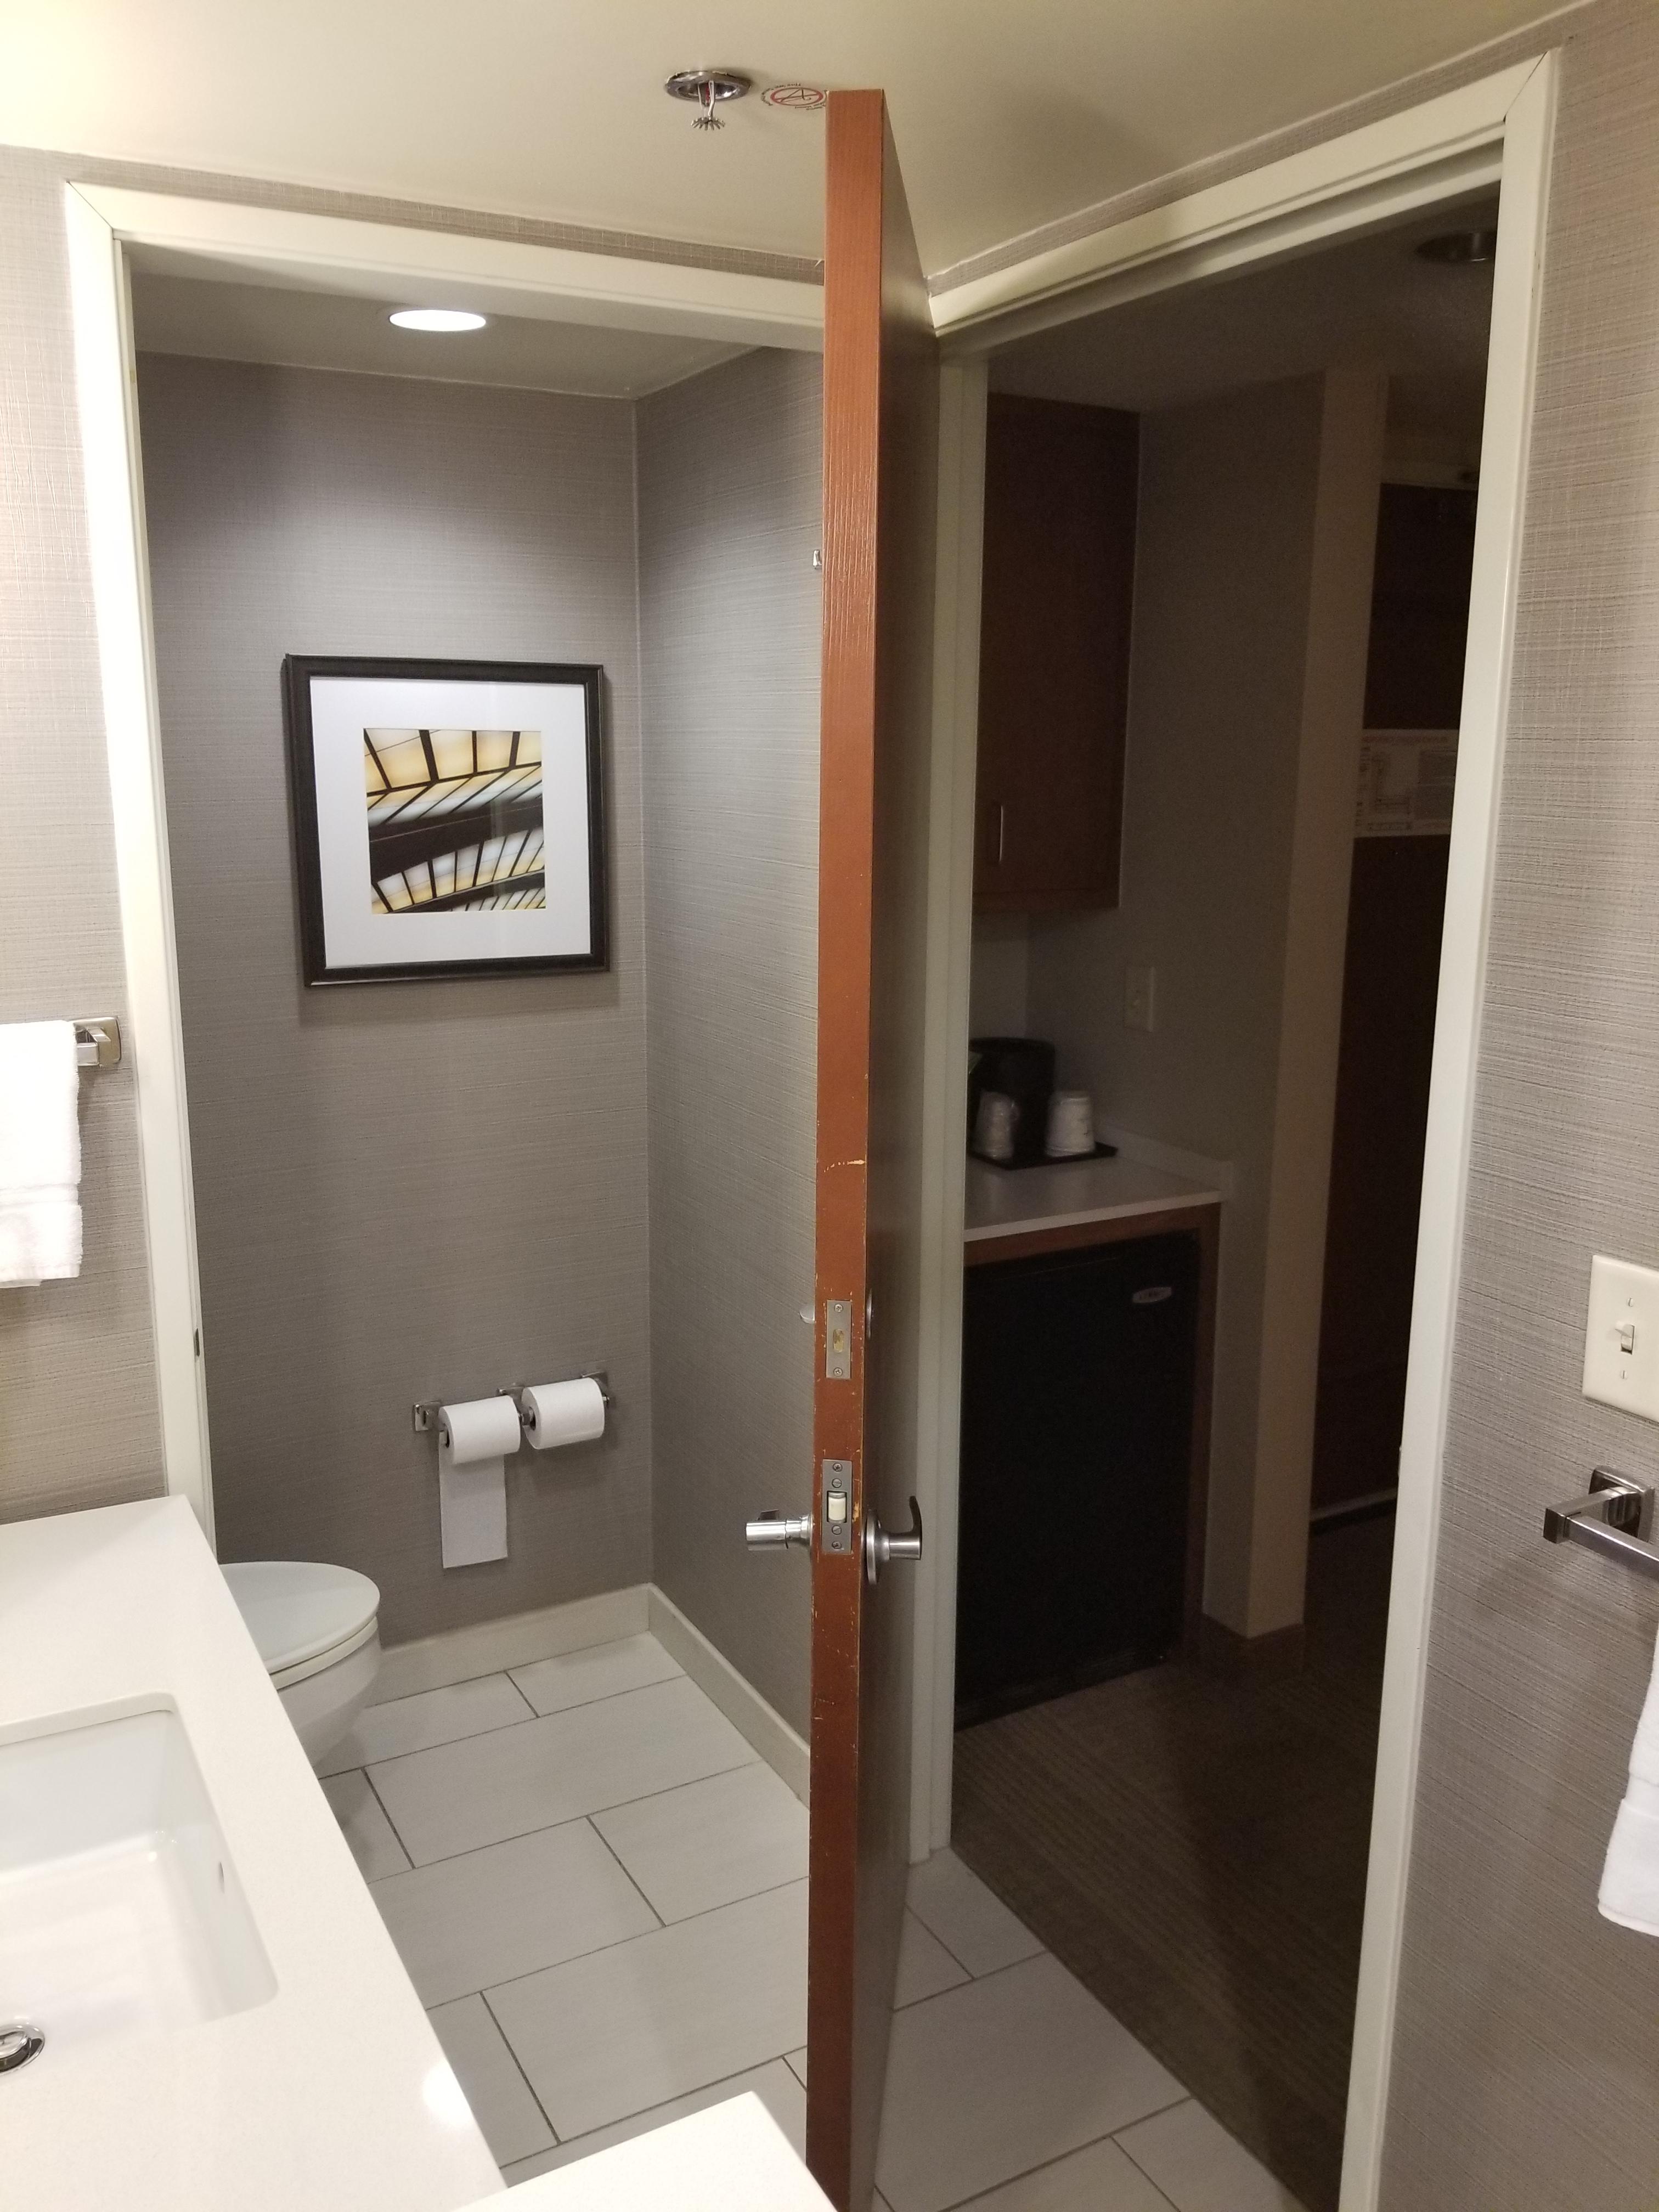 Door in hotel bathroom can close off either of 2 doorways.